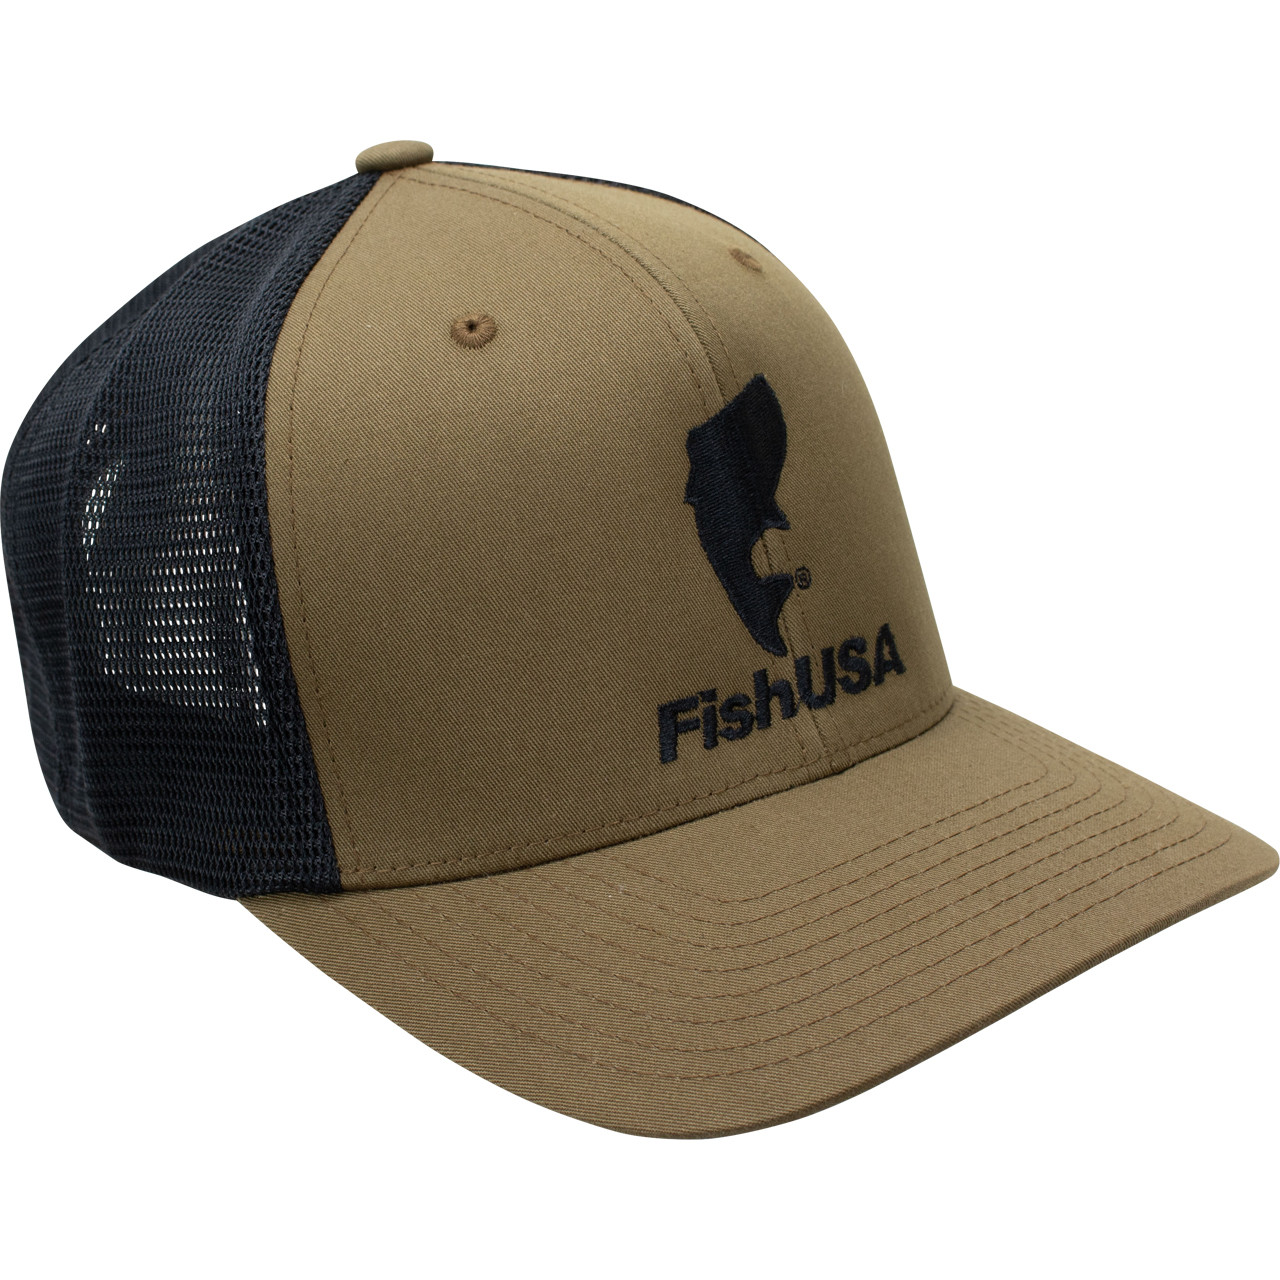 FishUSA Flexfit Trucker Hat FishUSA 